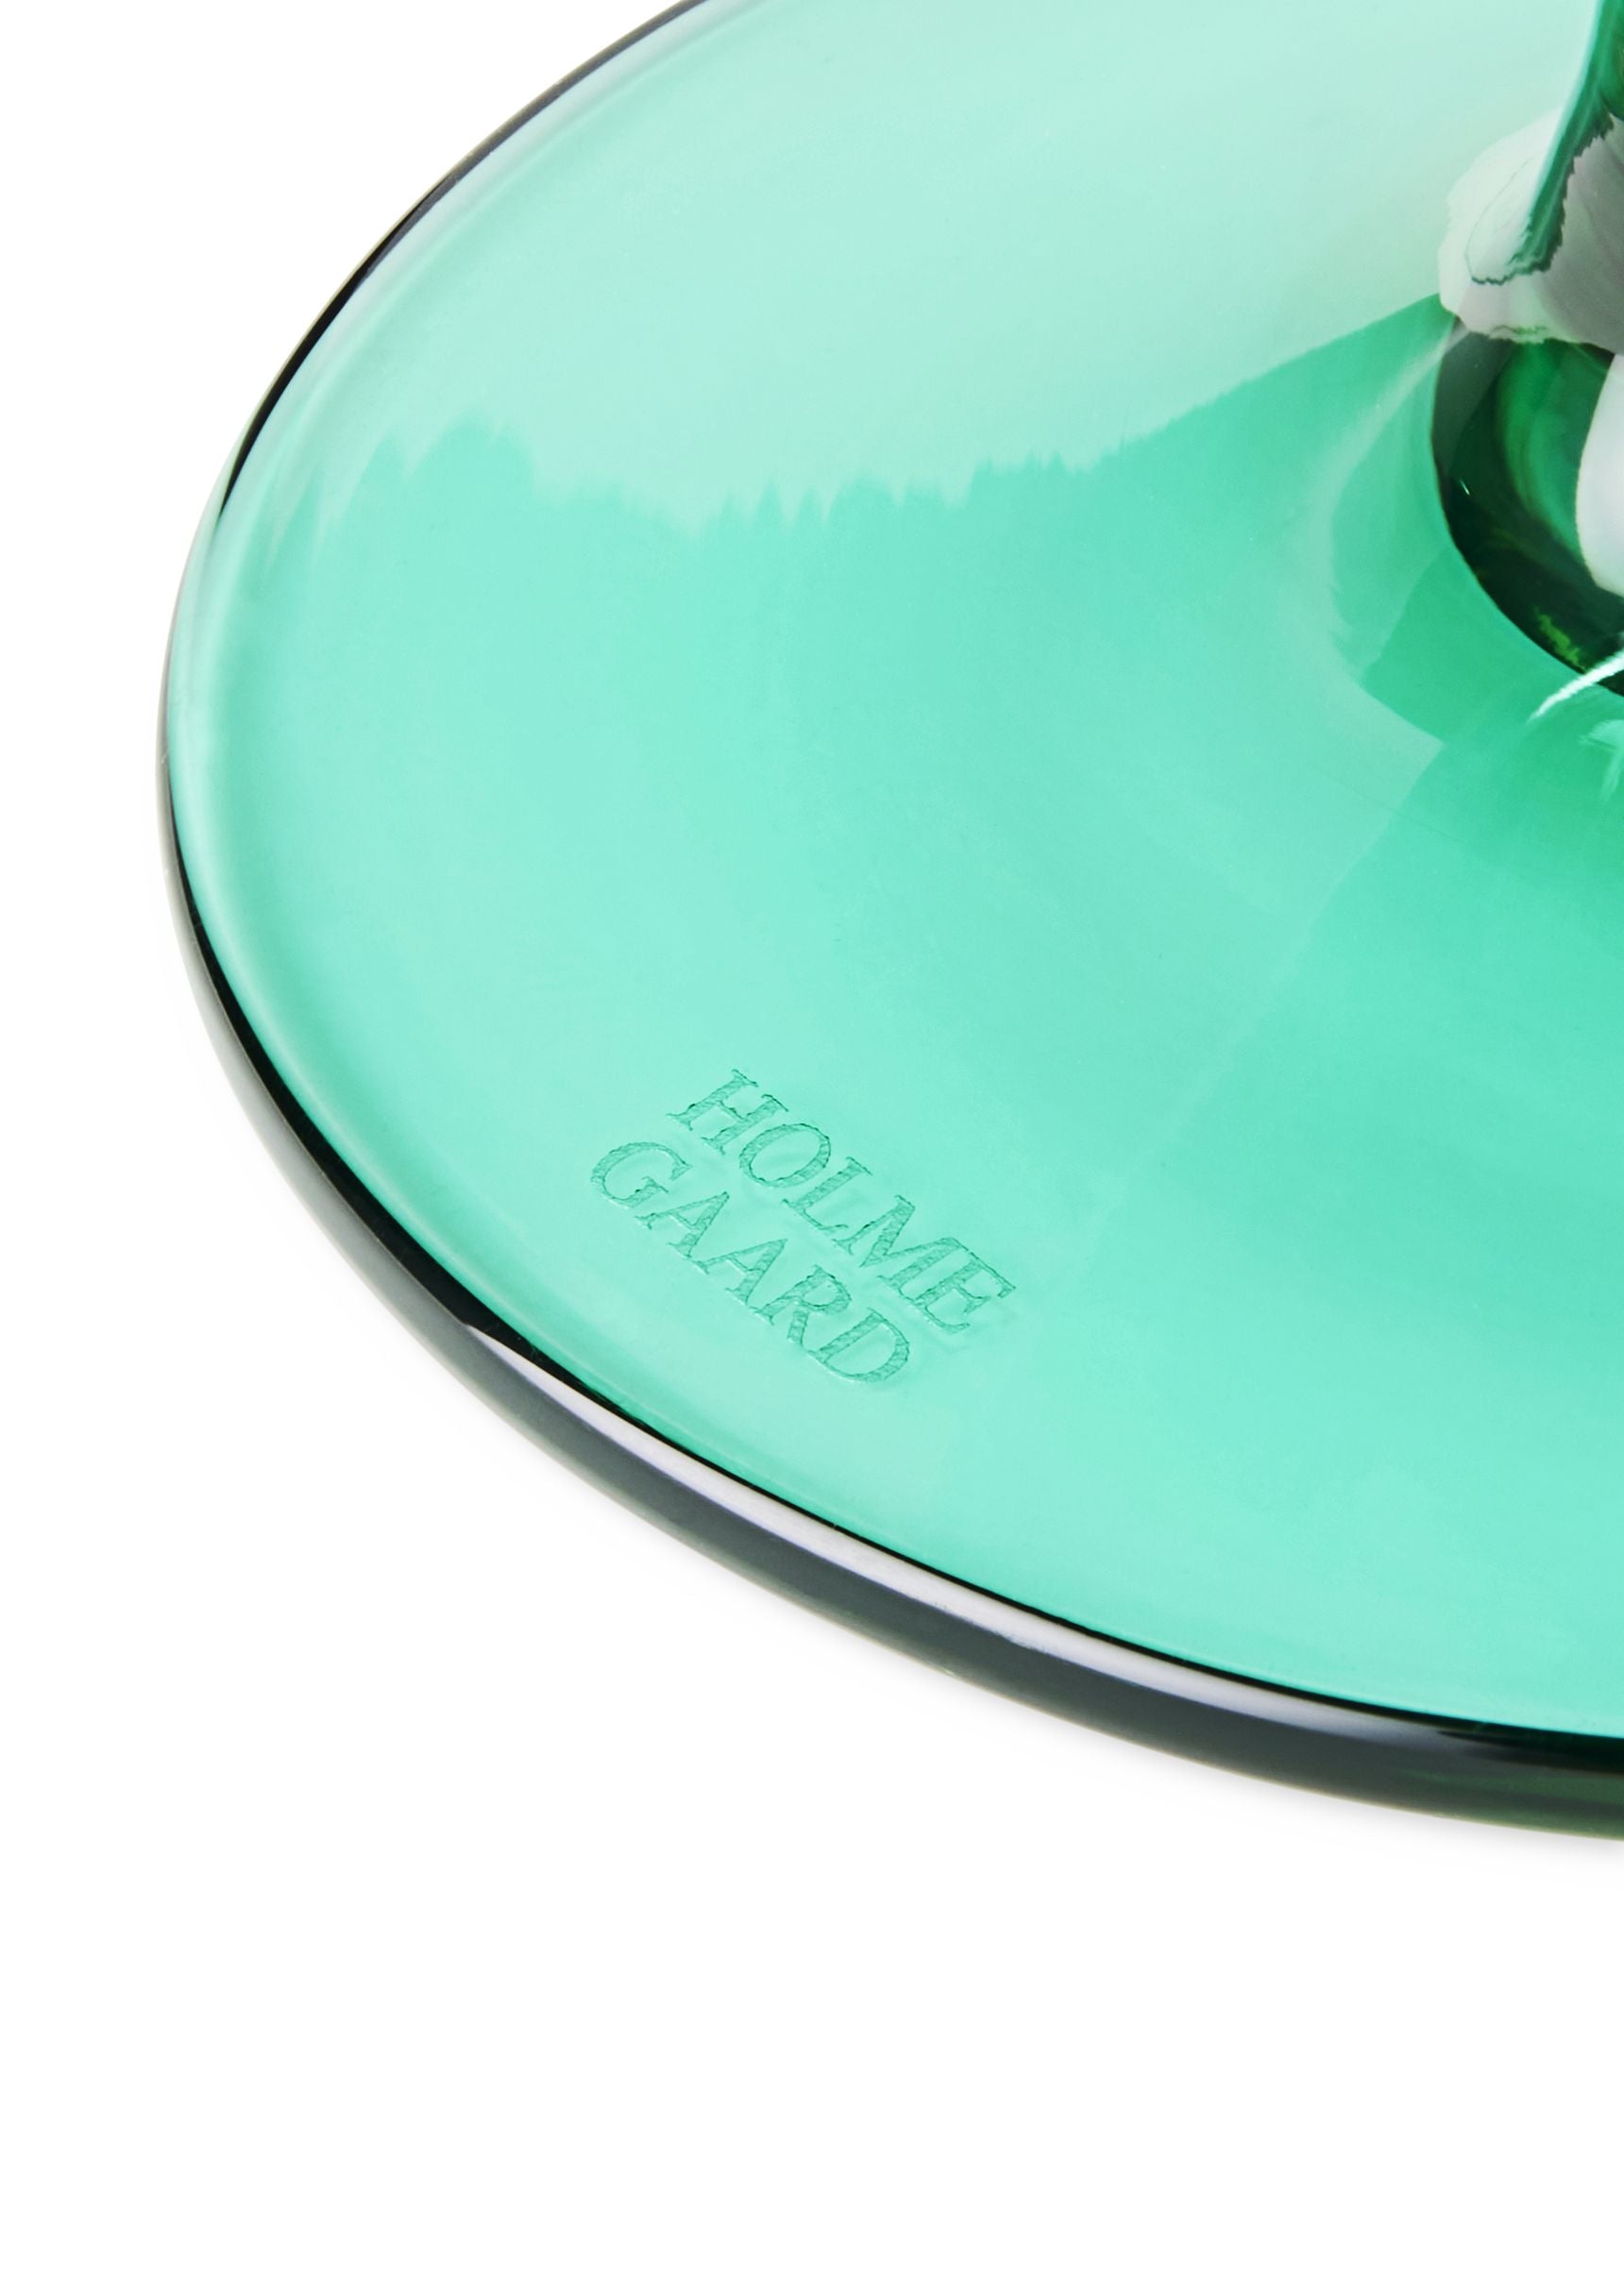 Holmegaard Flödesglas till fots 35 cl, smaragdgrön